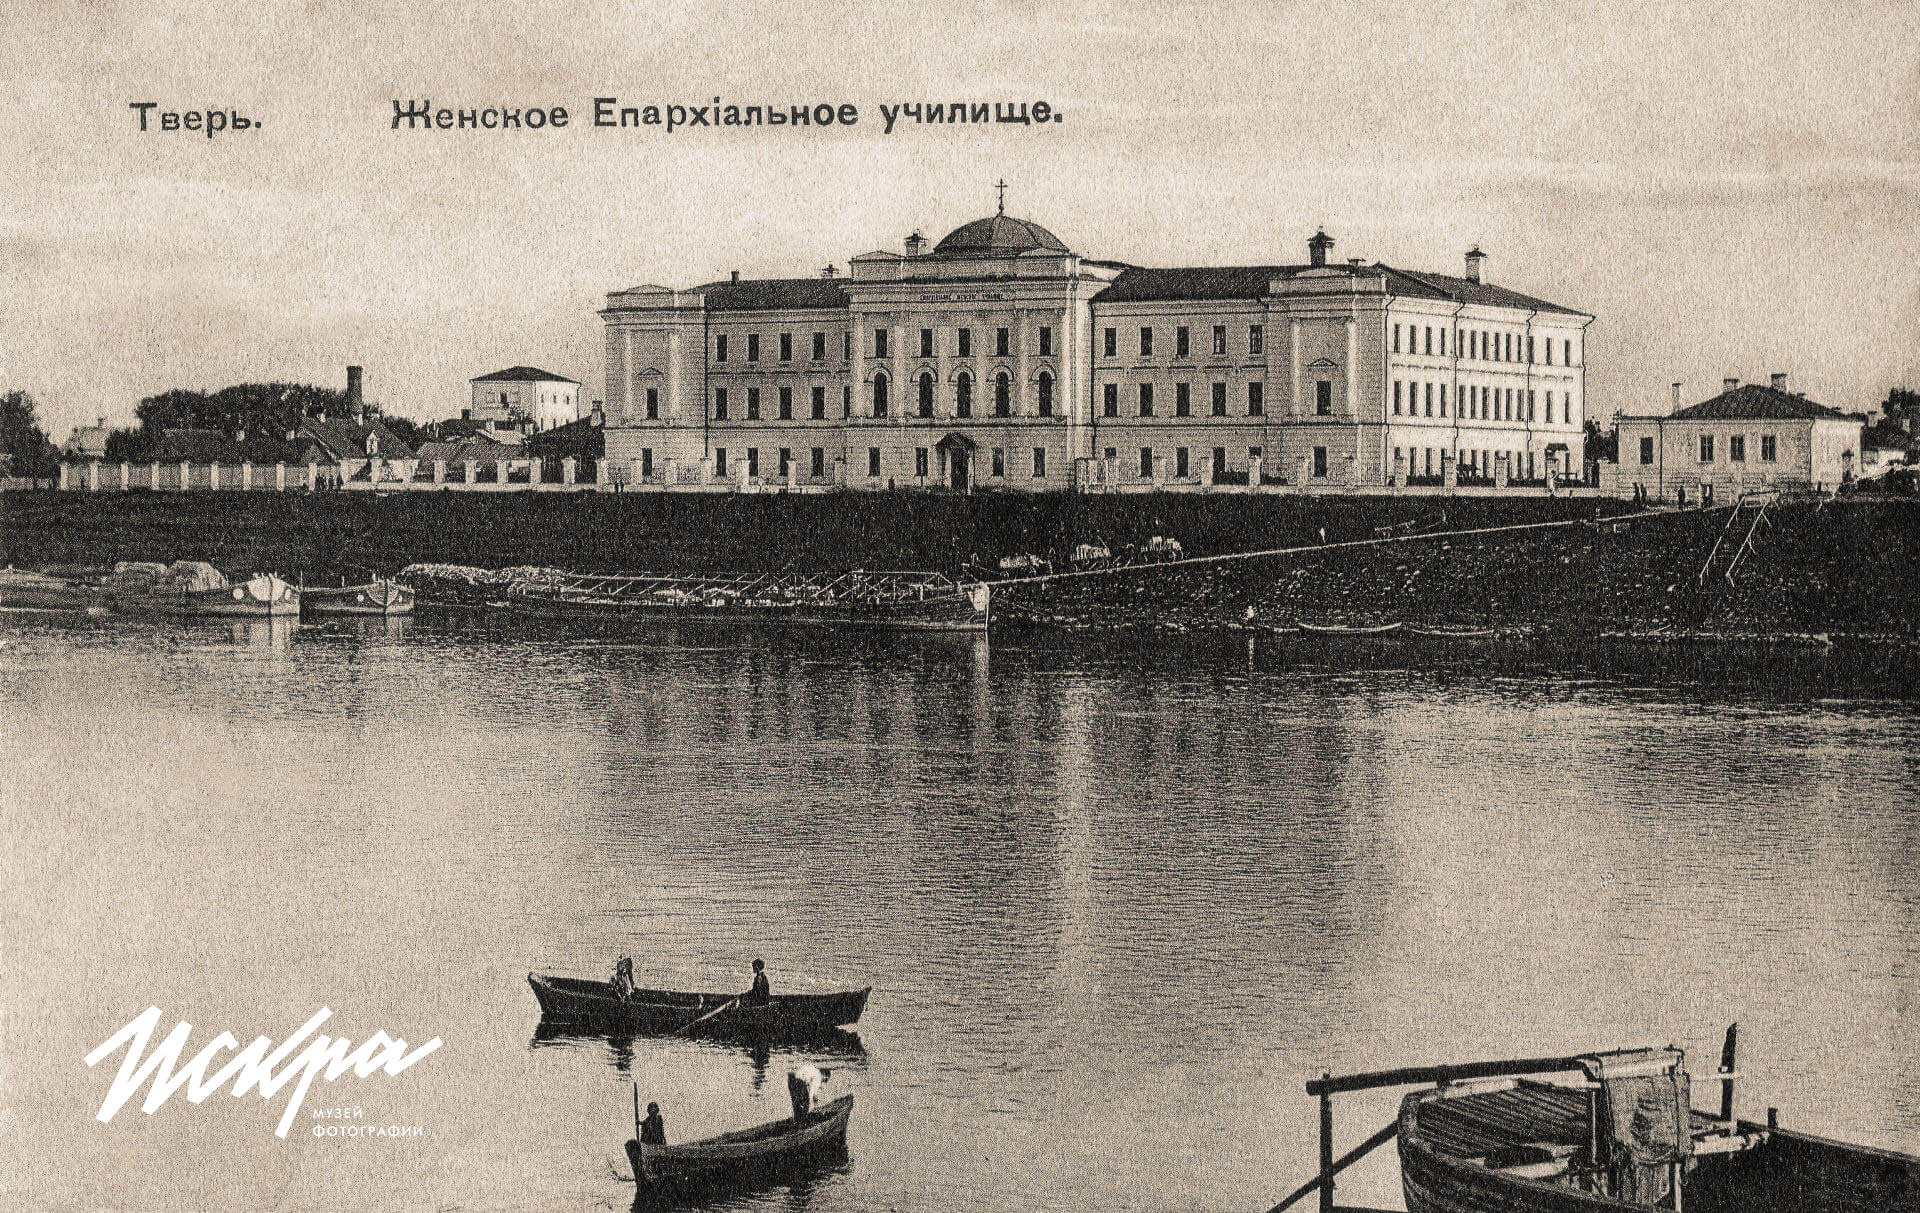 Женское Епархиальное училище - детская областная больница на Рыбацкой в Твери.